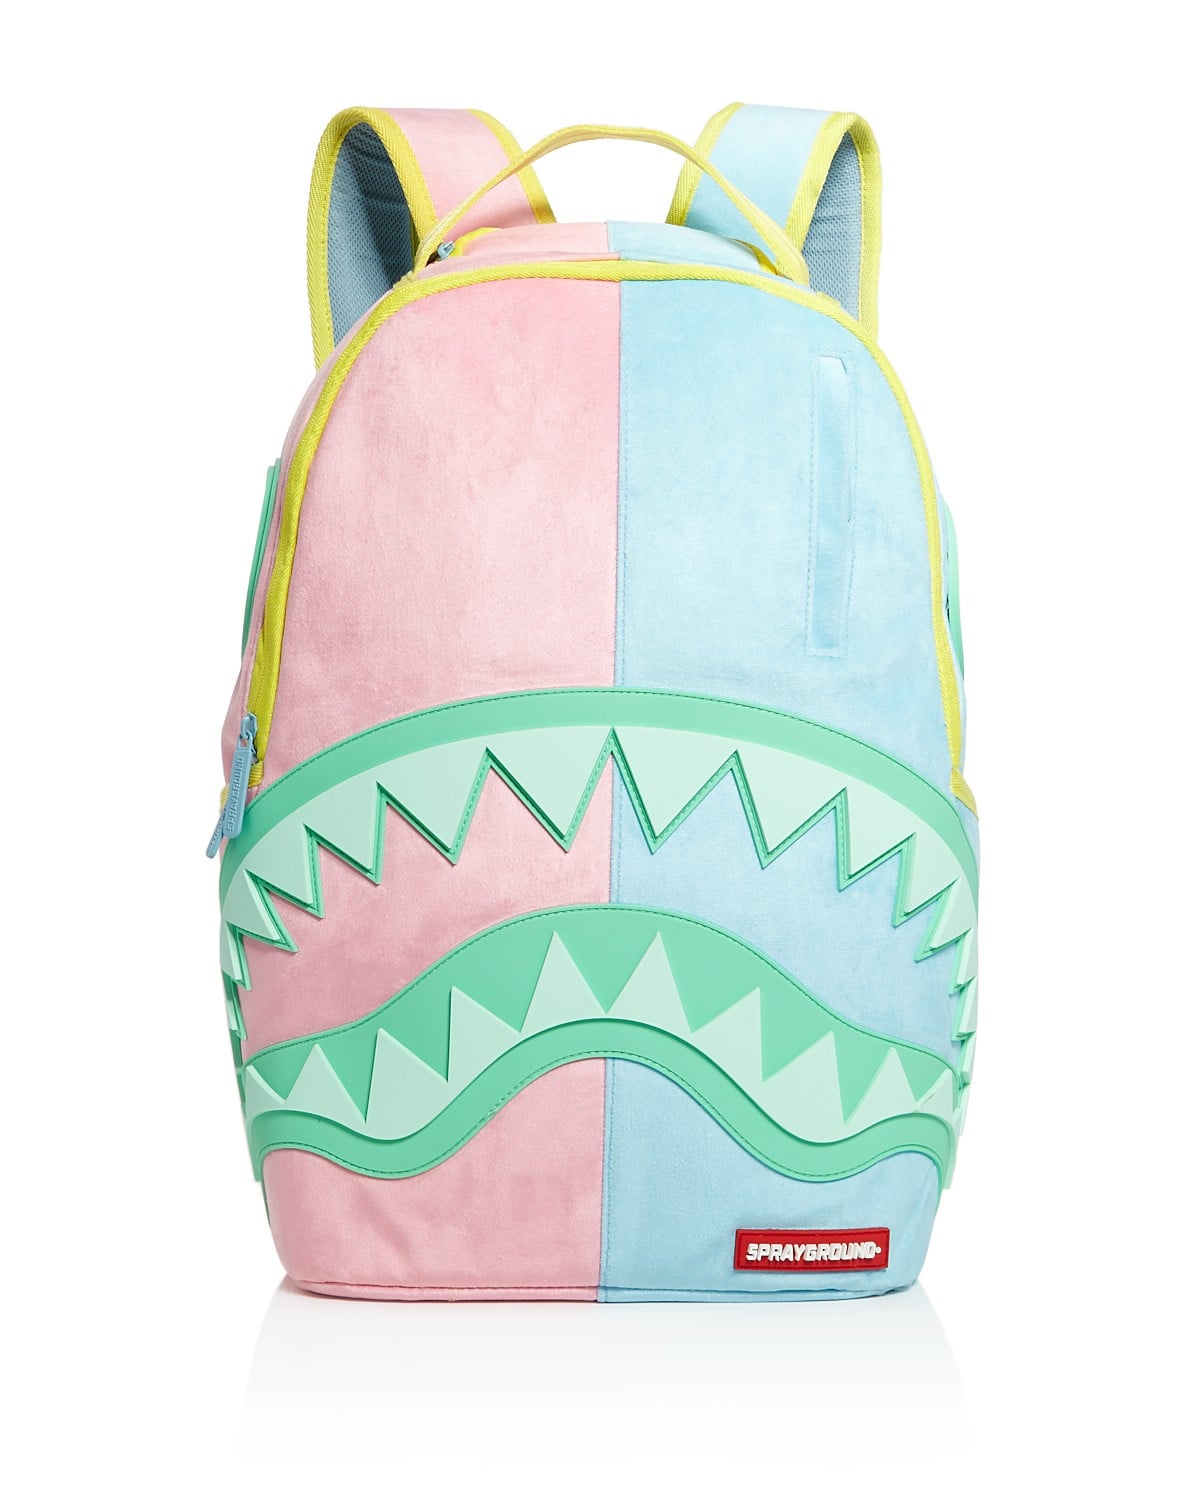 Cute Backpacks For Kids 18 Popsugar Family